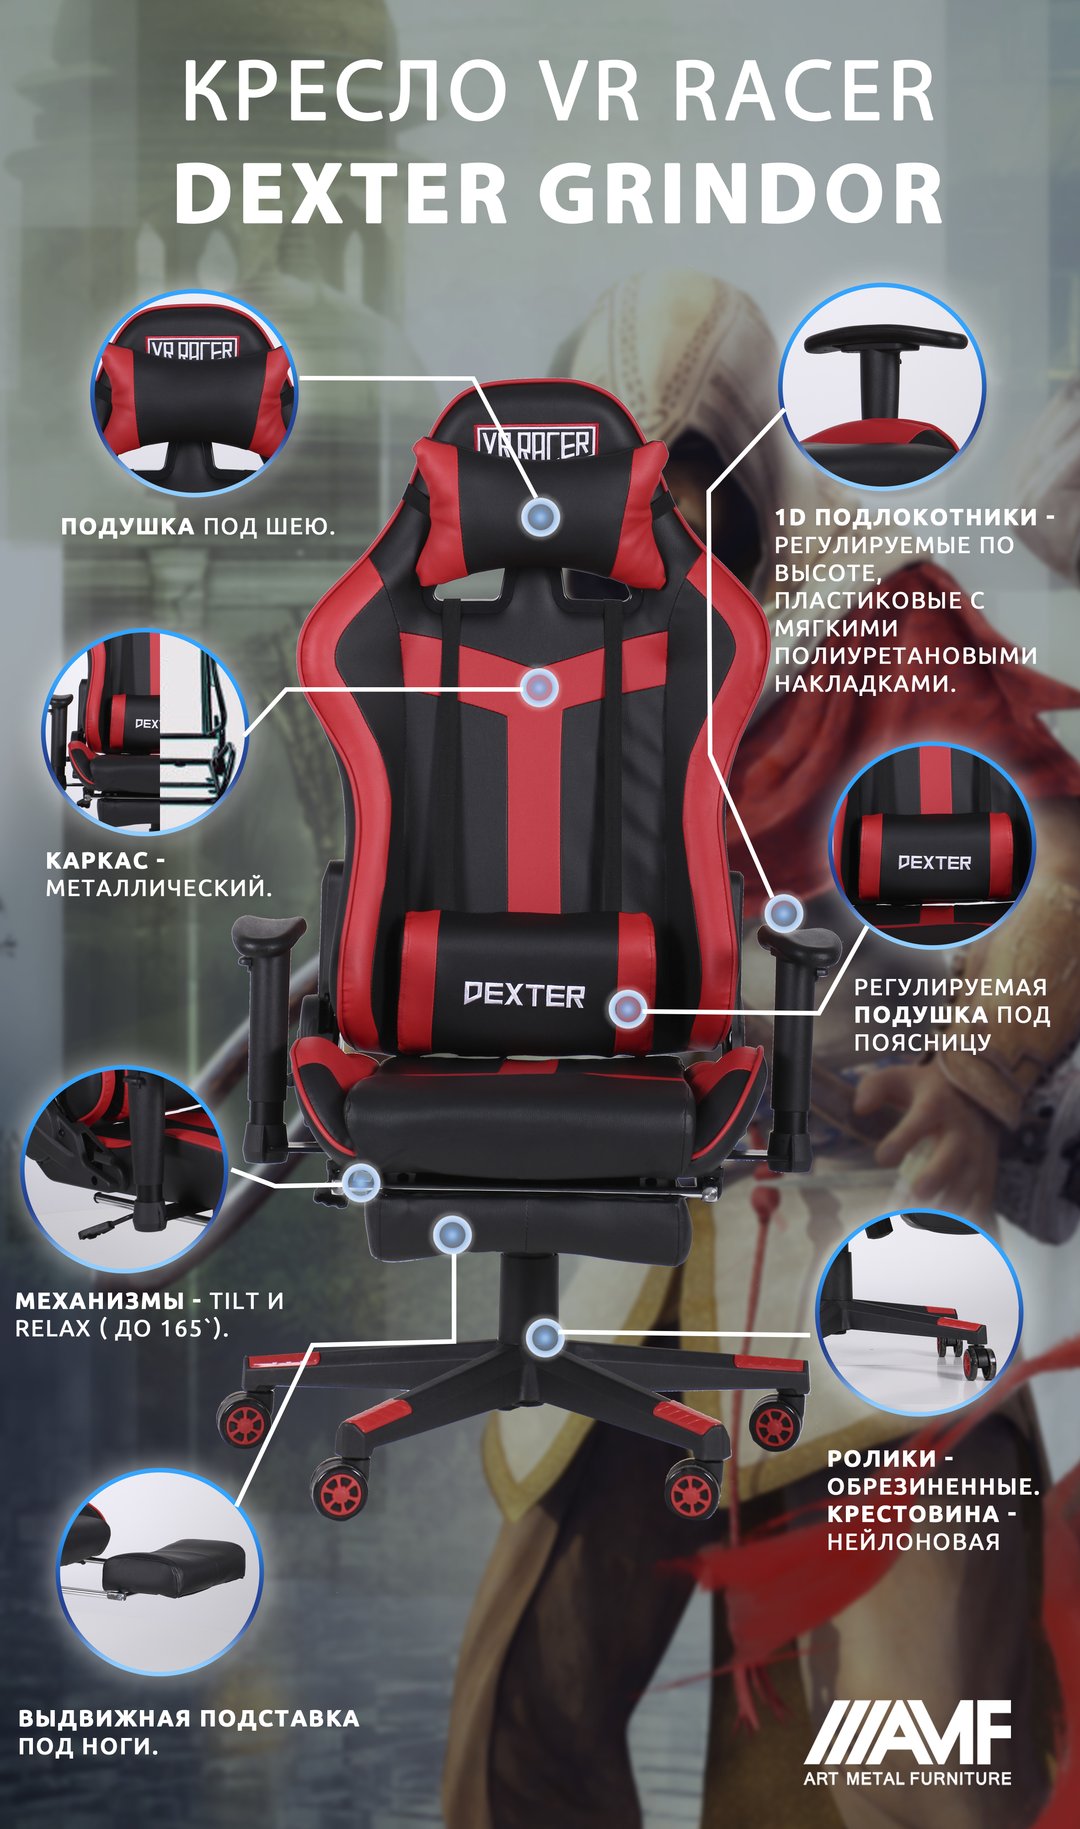 Кресло VR Racer Dexter Grindor описание-2